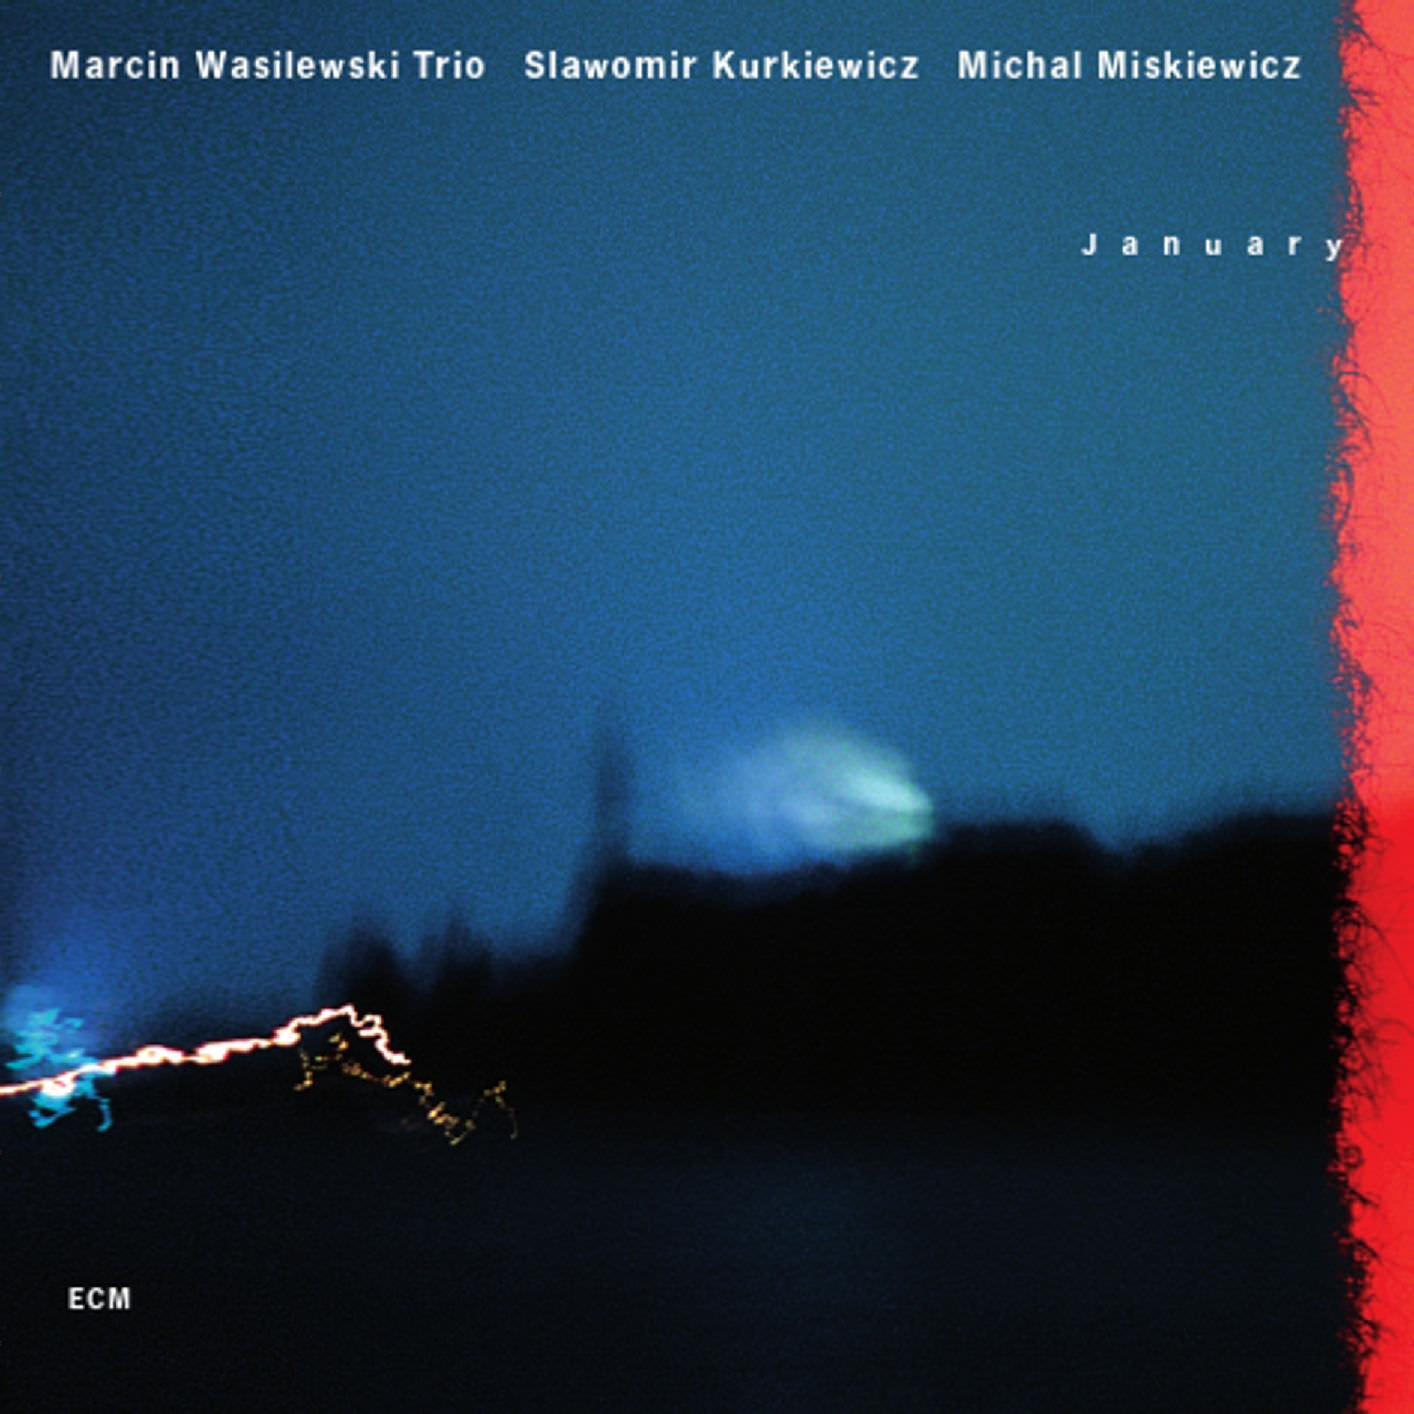 Marcin Wasilewski Trio - January (2008/2017) [FLAC 24bit/96kHz]